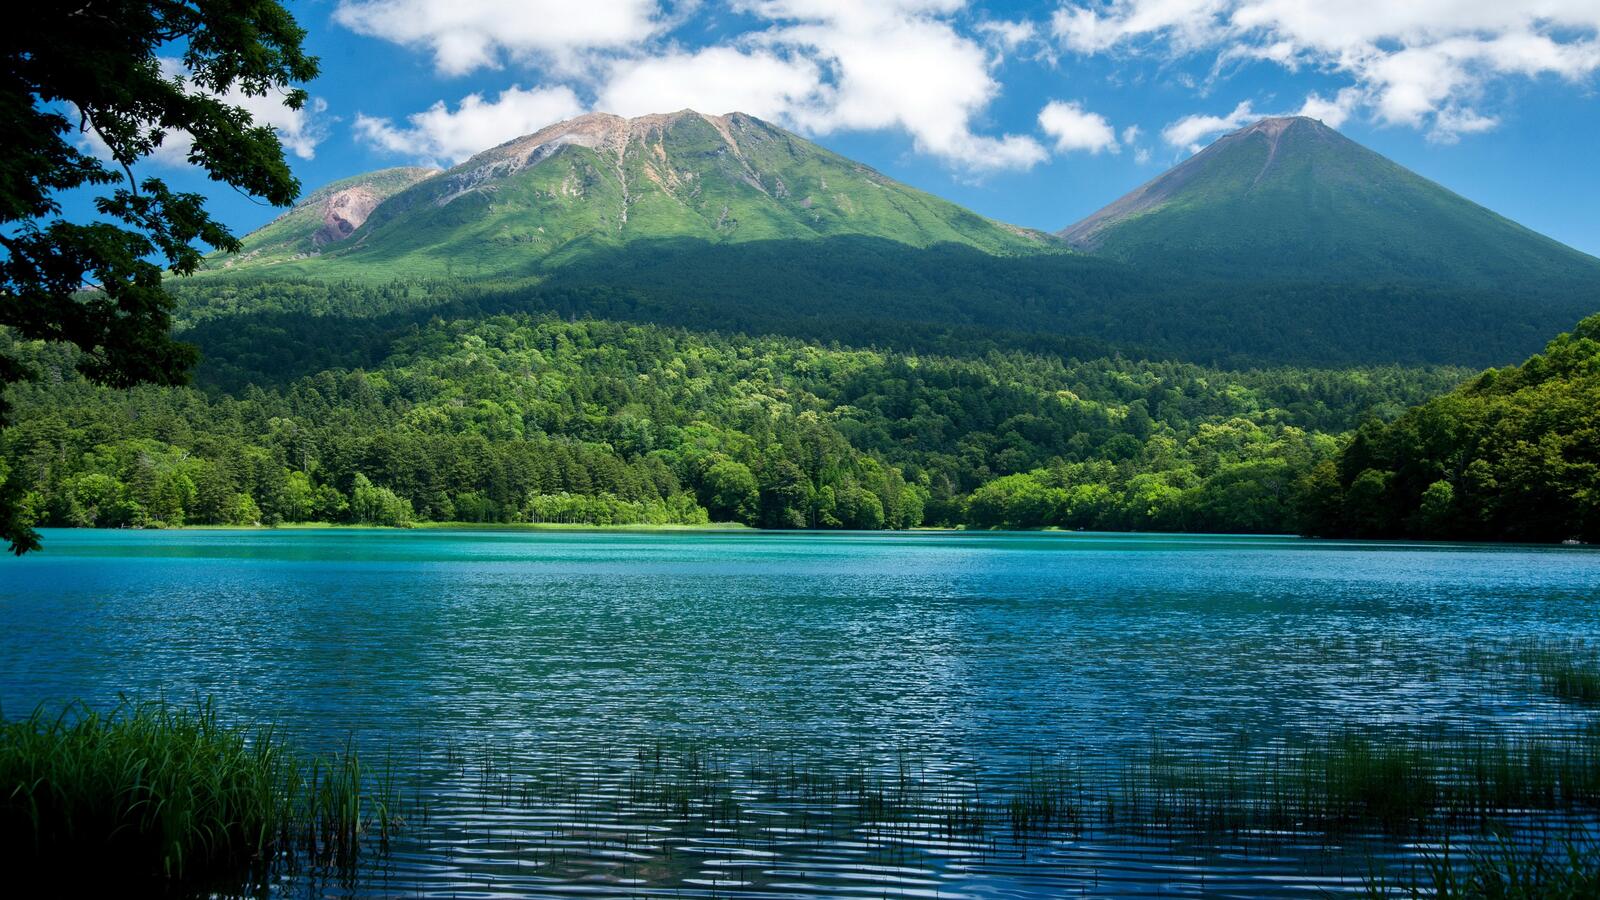 Бесплатное фото Красивое голубое озеро на фоне гор похожих на вулкан